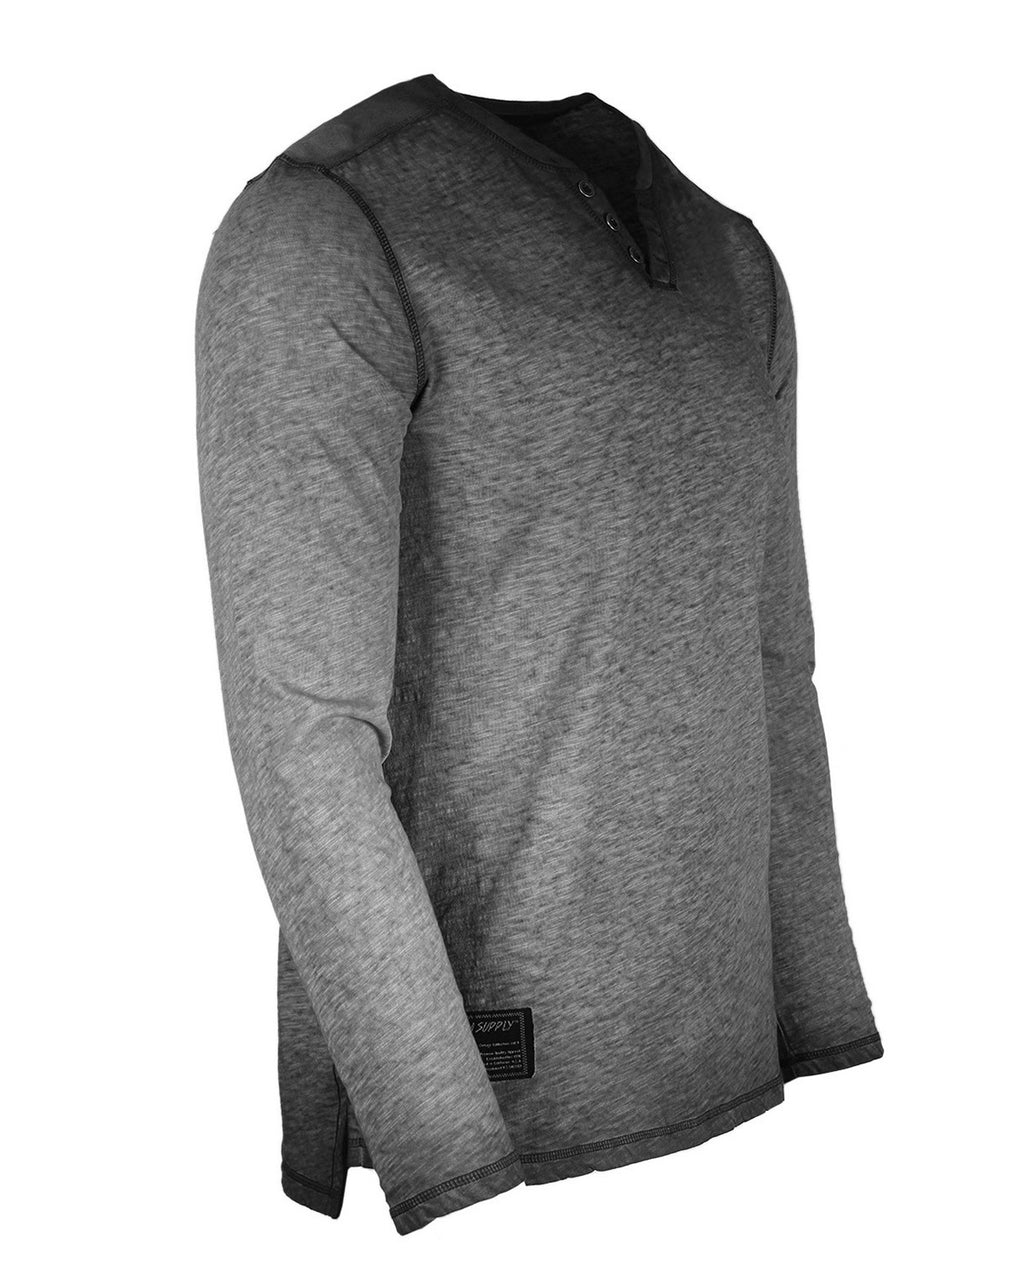 ZIMEGO Mens Long Sleeve V-Neck Henley Oil Wash Contrast Seam Vintage Shirt - Charcoal